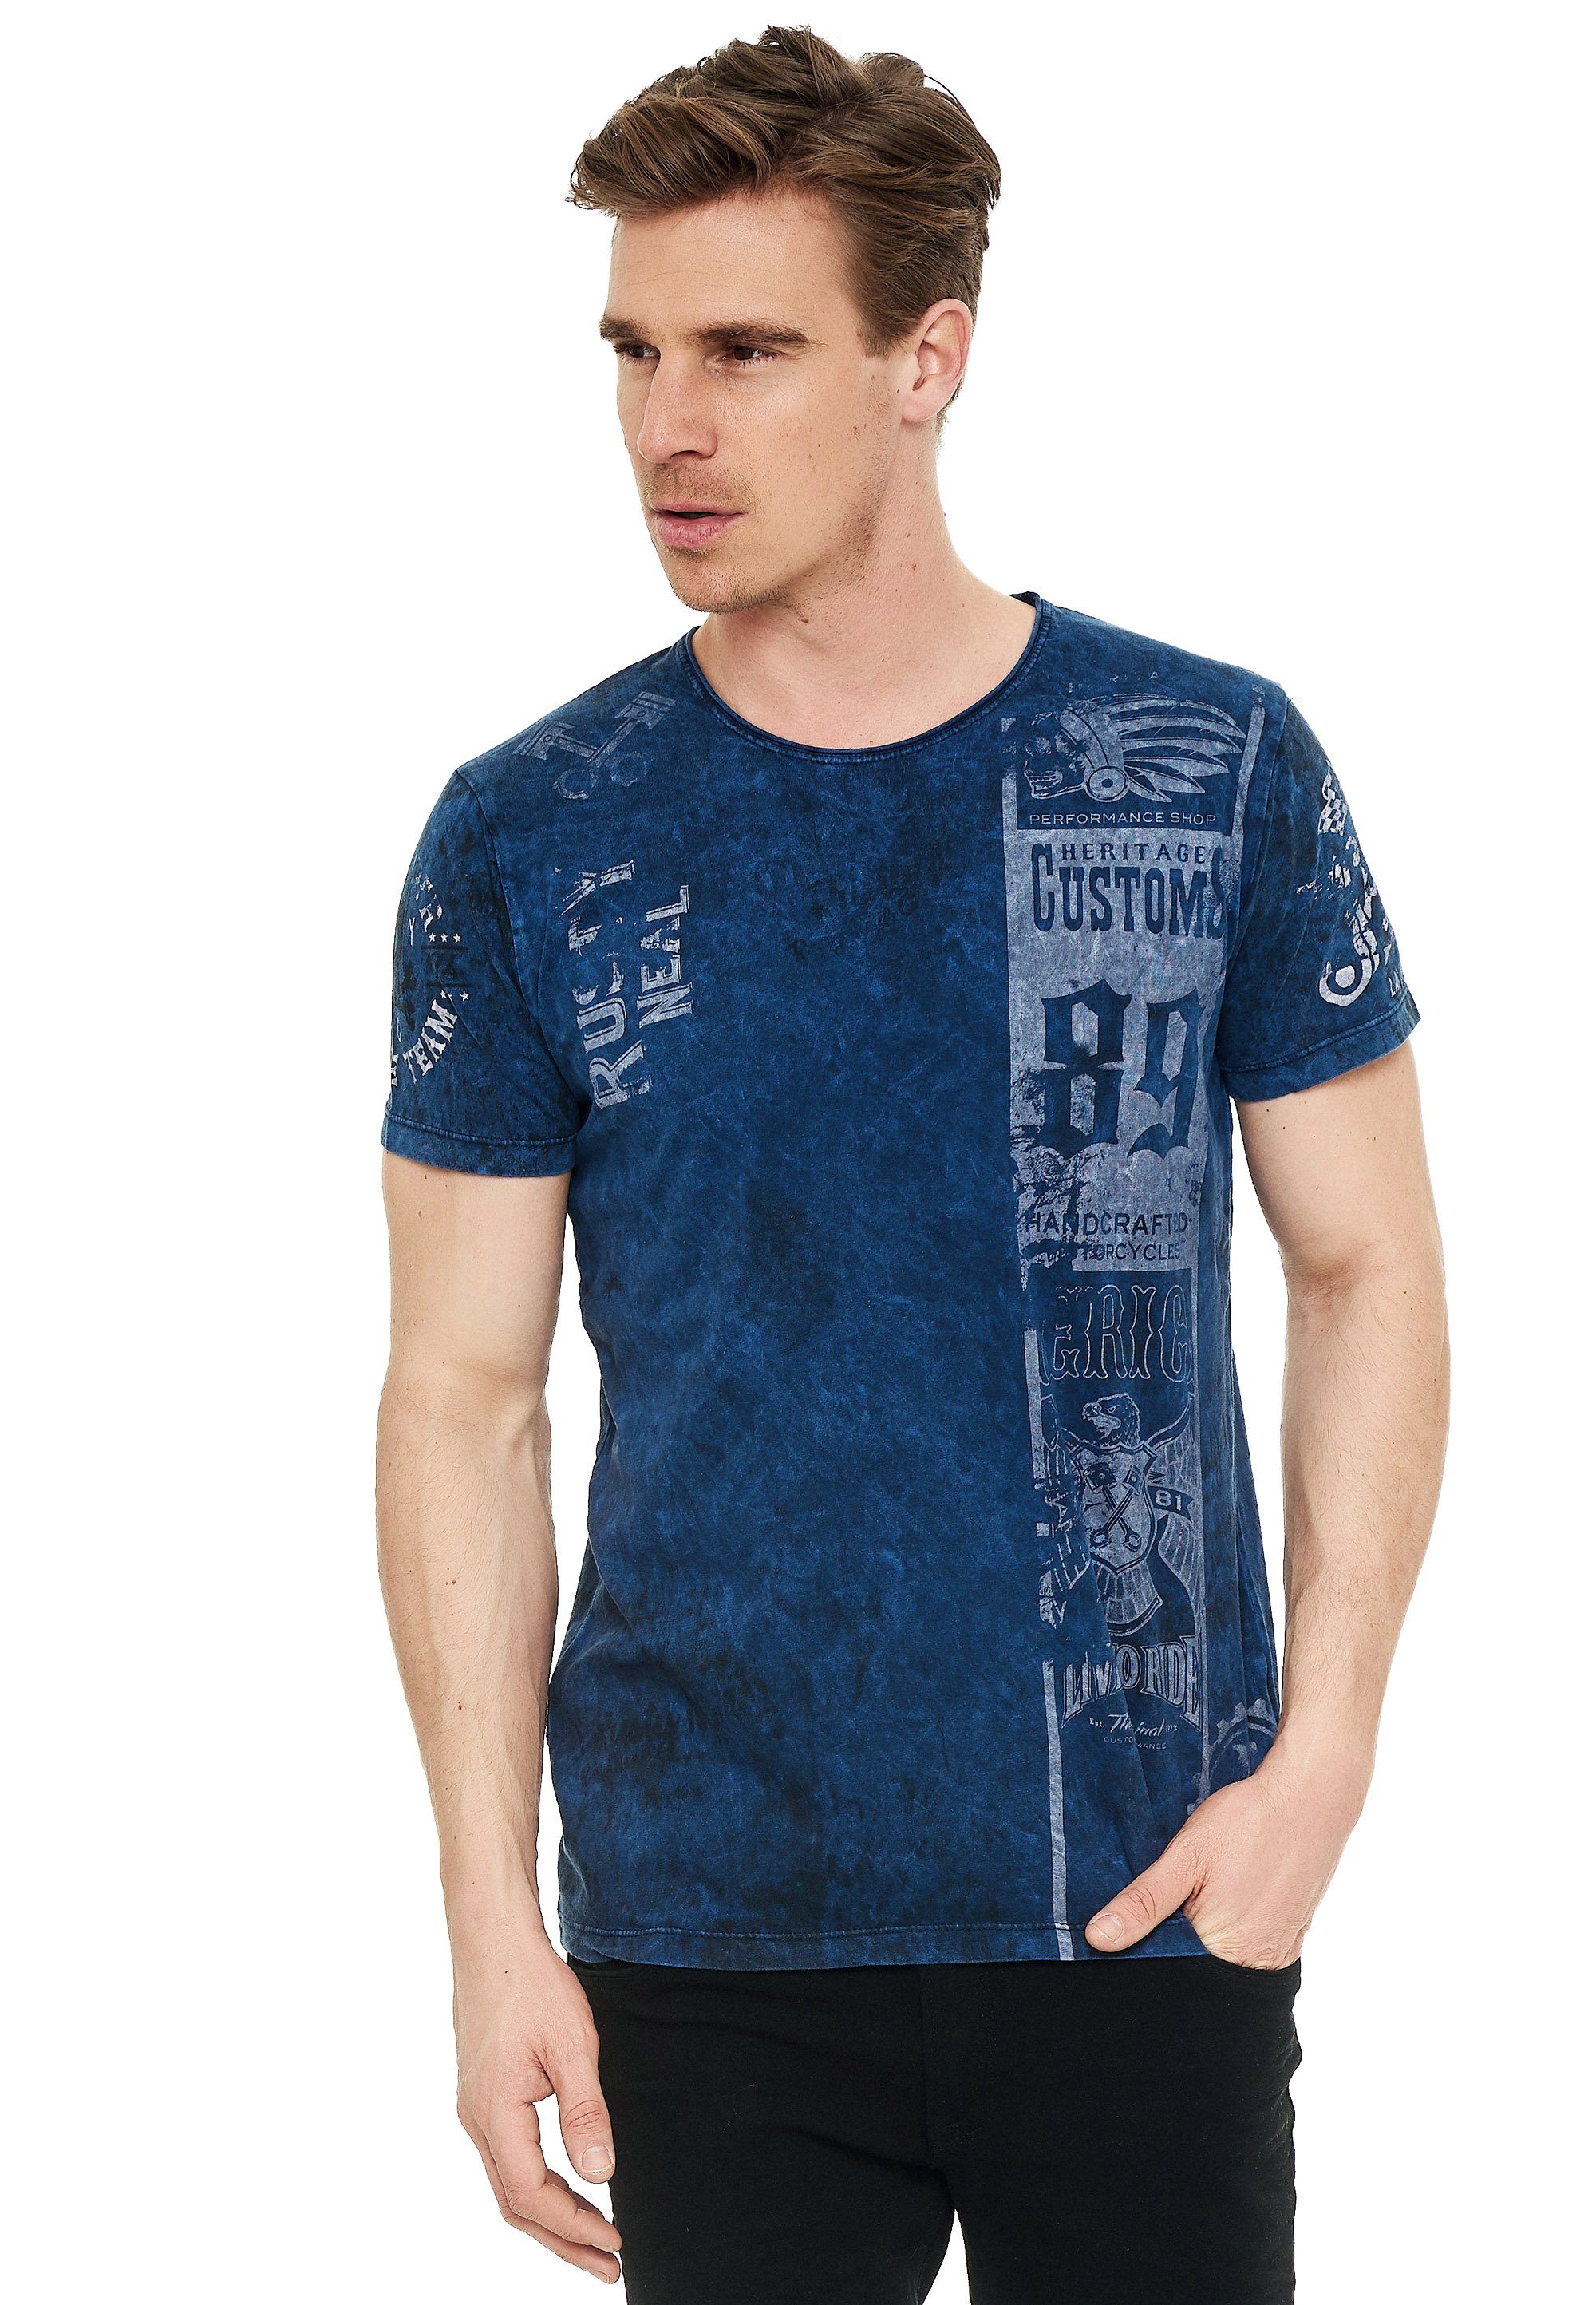 [Neueste Werke & Schnäppchen] Rusty Neal T-Shirt mit modernem Print dunkelblau-weiß